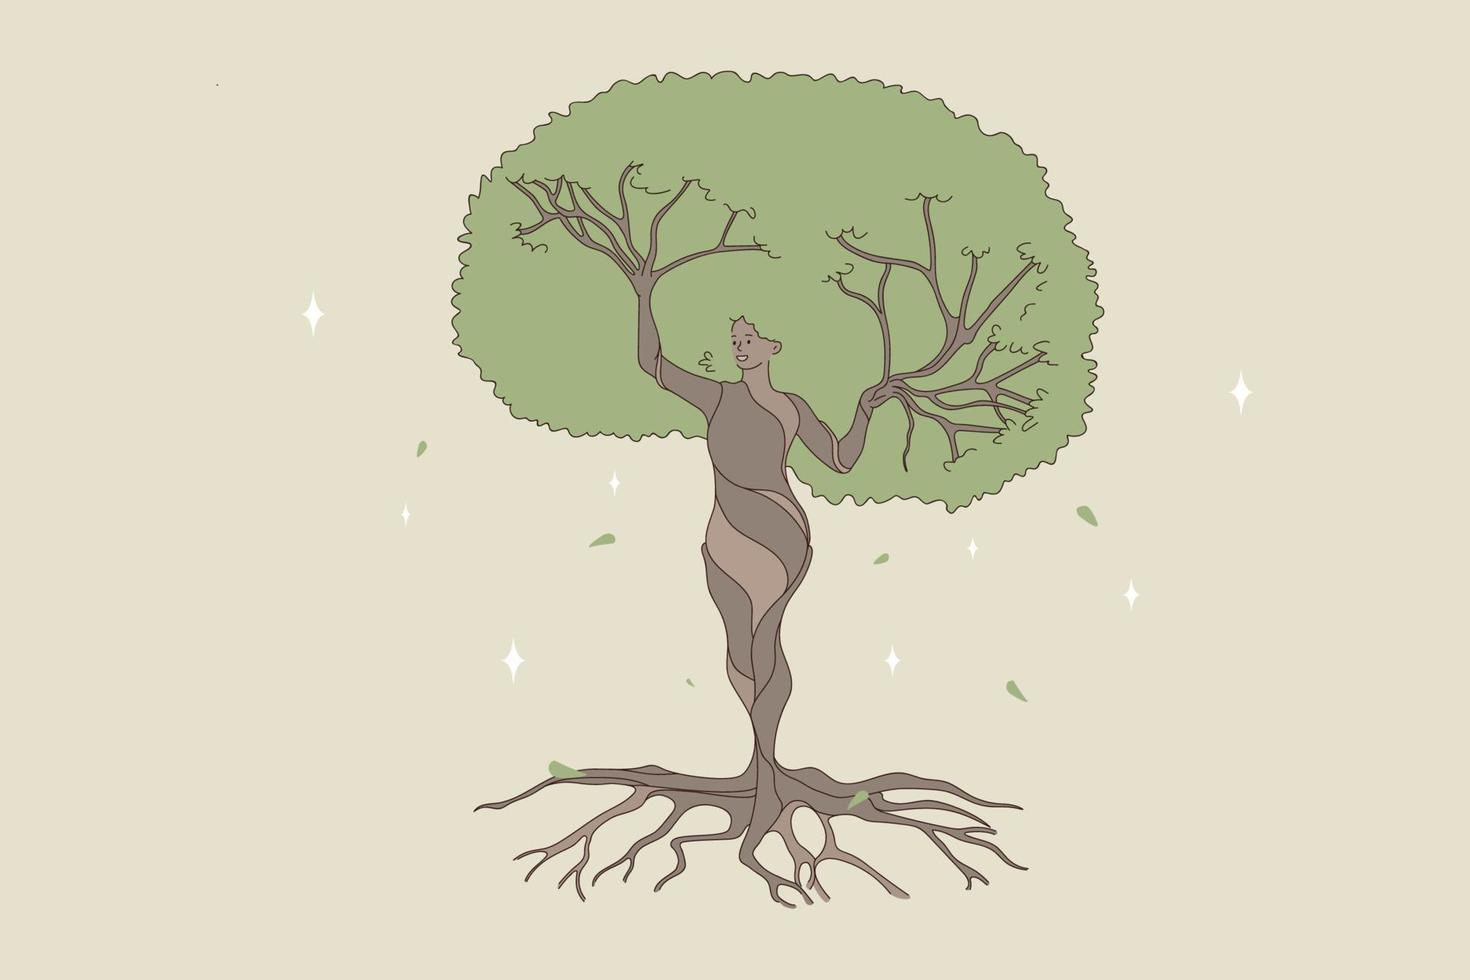 forma de mujer siendo un árbol de bosque natural. ilustración del concepto vectorial de la naturaleza y el equilibrio humano salvando y protegiendo la naturaleza. vector